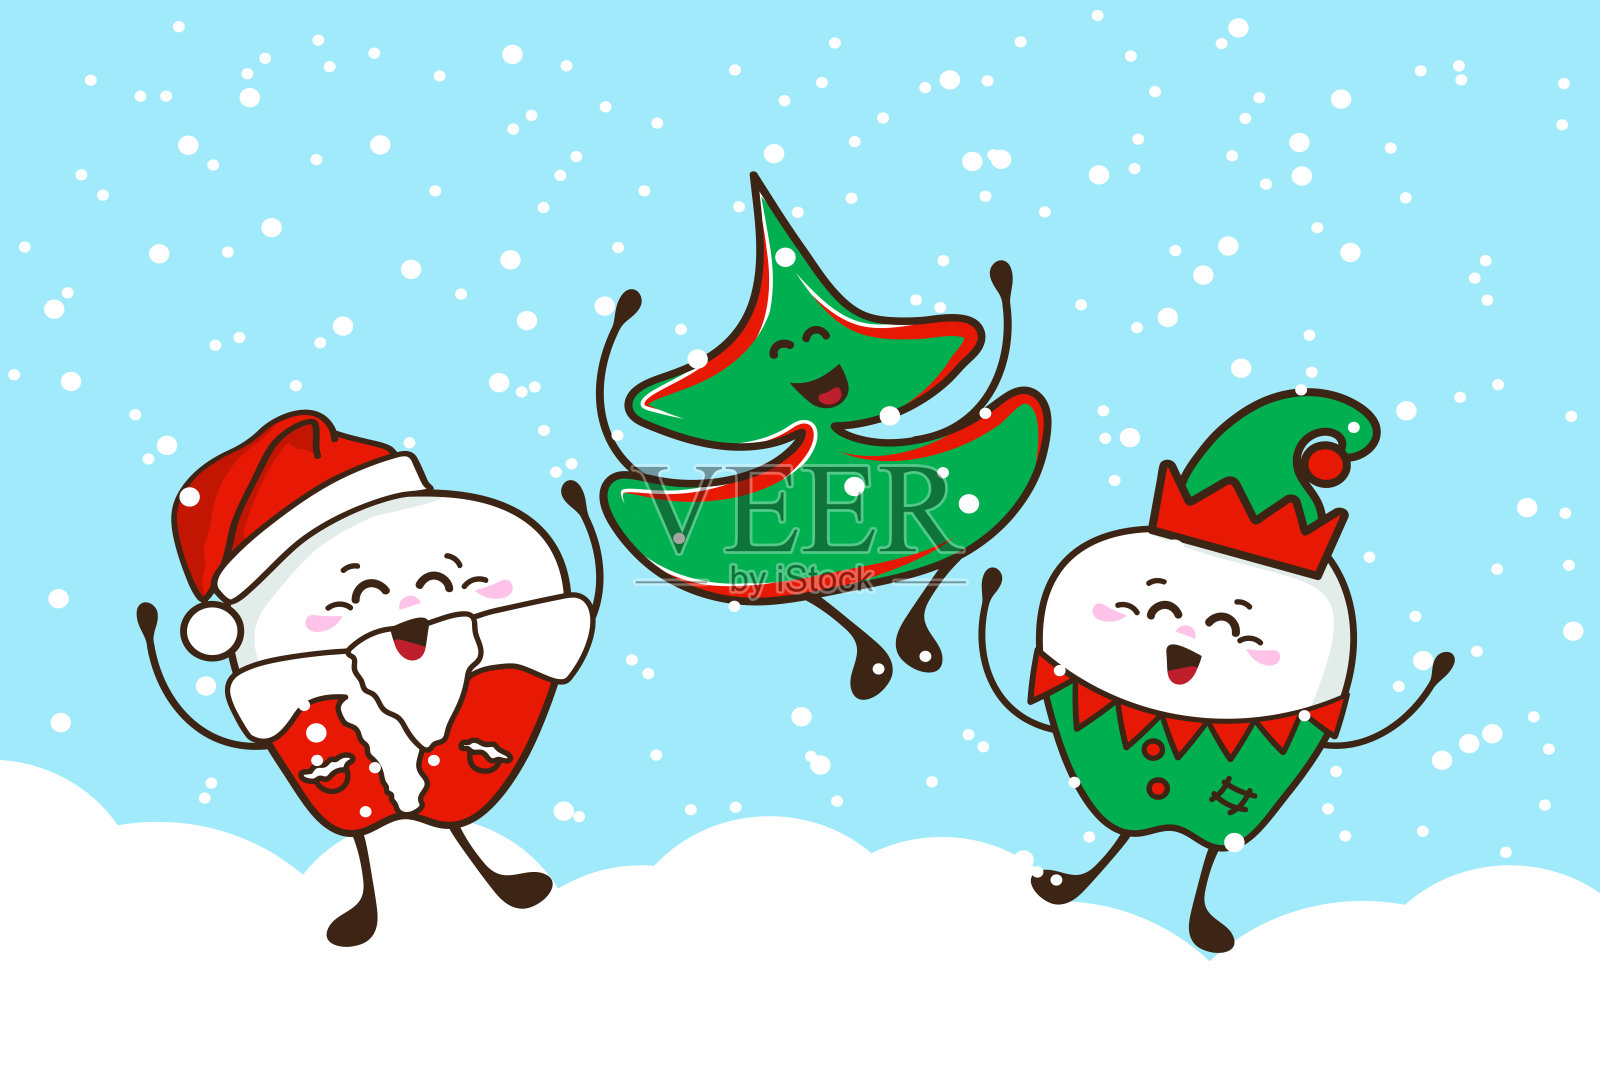 圣诞快乐!一张有奇怪牙齿和圣诞树的海报。插画图片素材